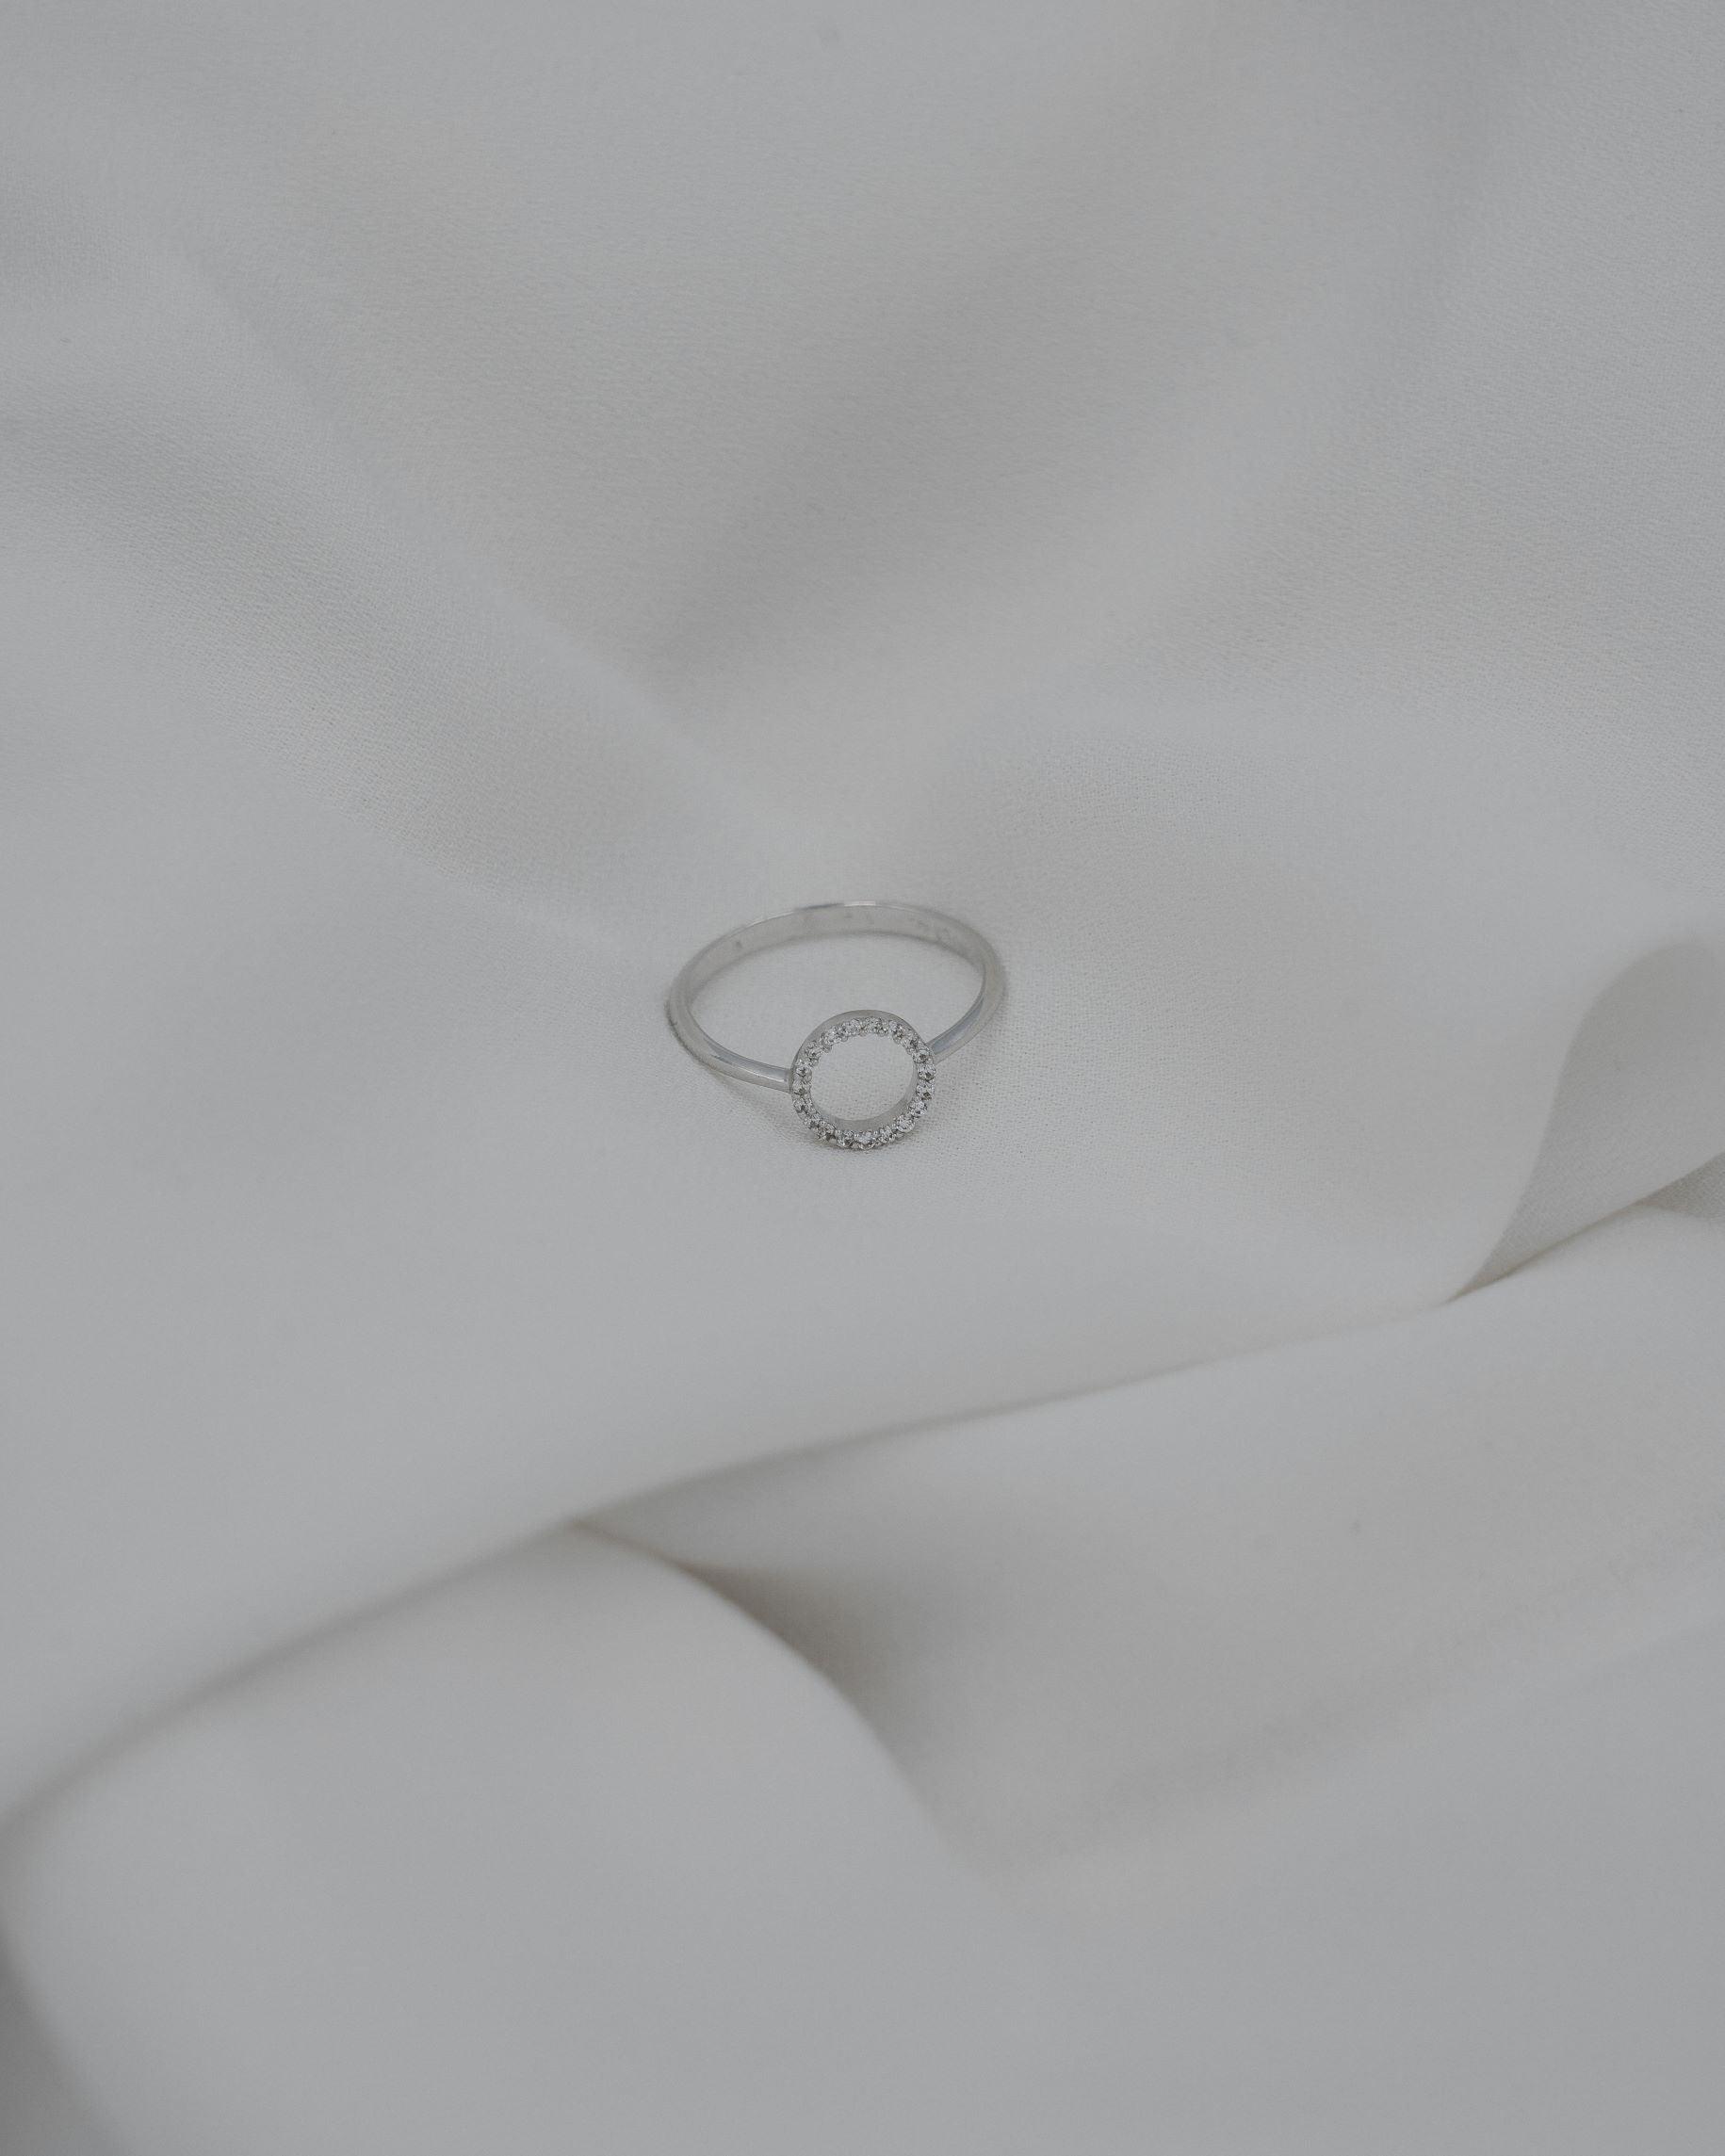 Λευκόχρυσο δακτυλίδι Κ14 με στρογγυλό στοιχείο